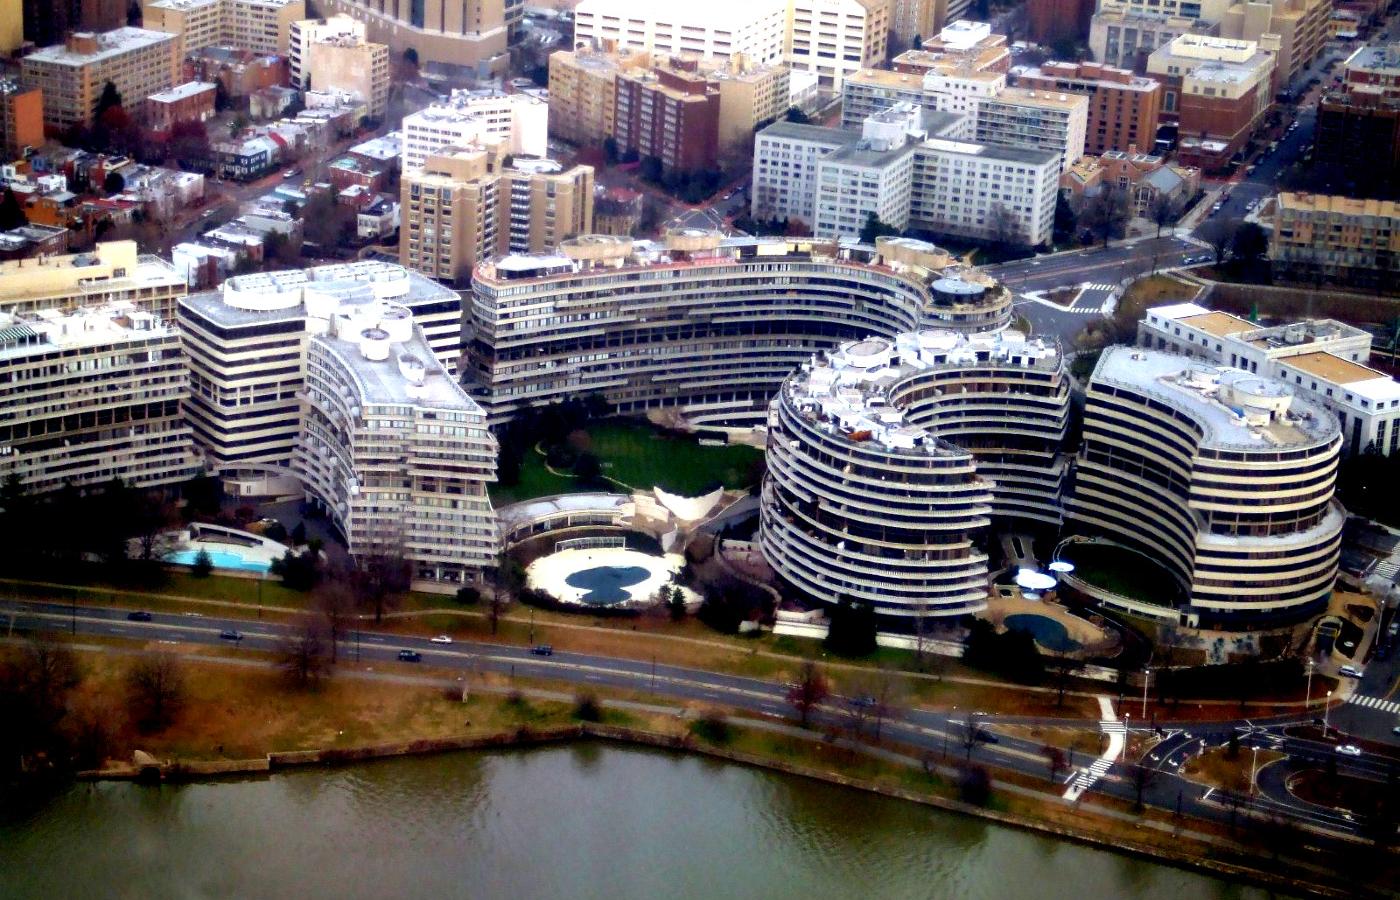 Kompleks Watergate w Waszyngtonie